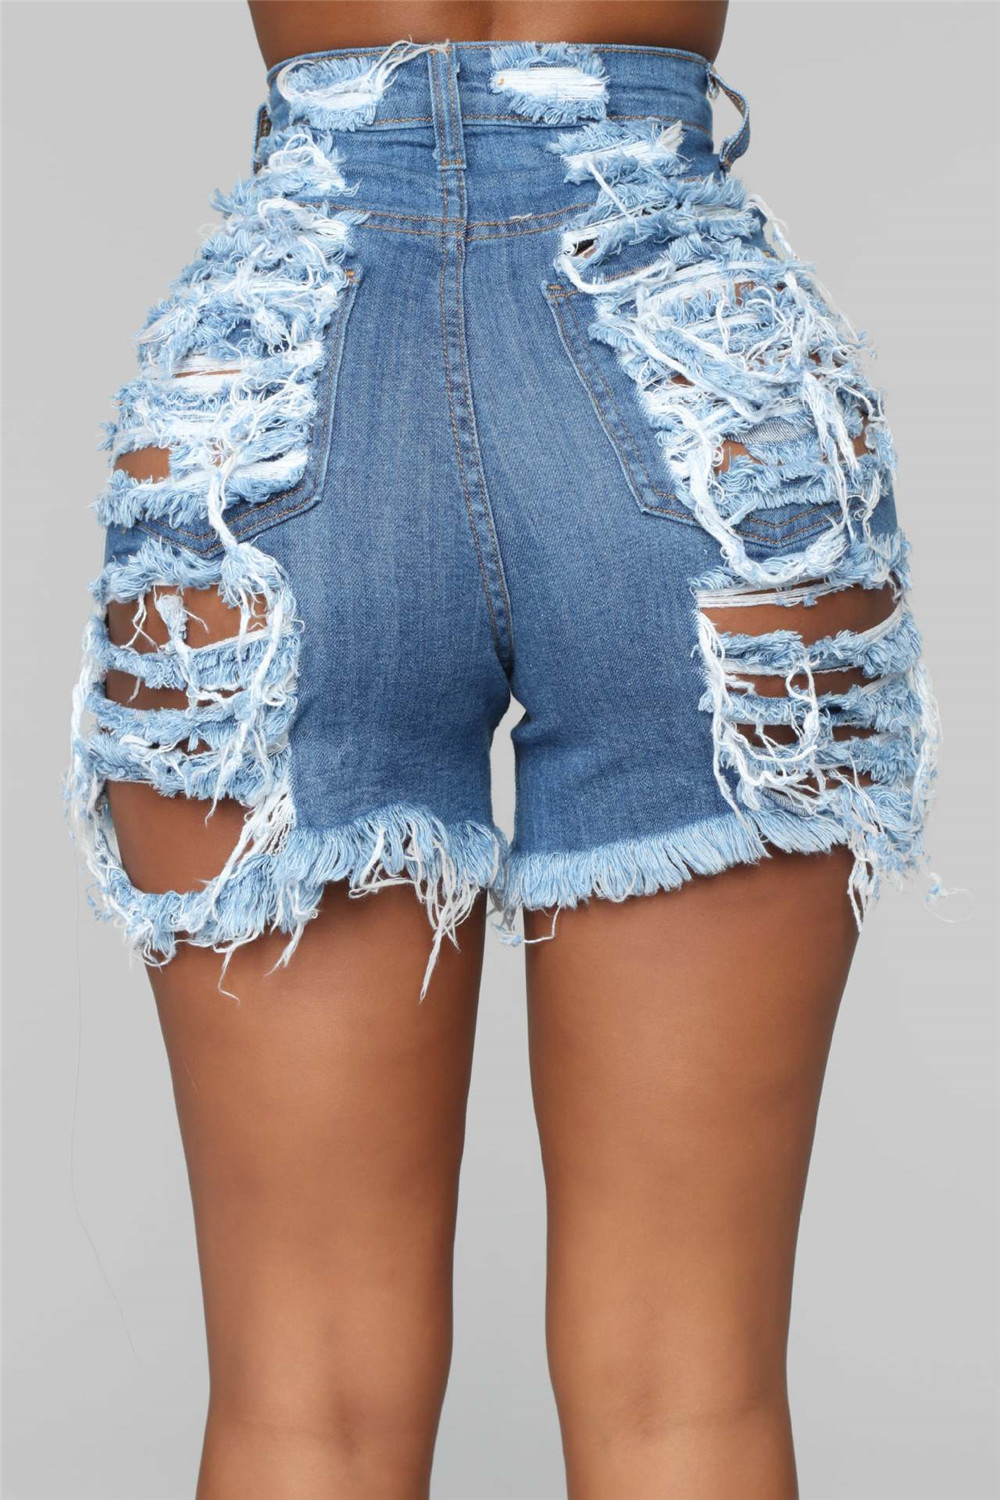 2023 Дизайнерские летние джинсовые шорты Женские джинсы Vantage Ripped High Waist Stretchy Shorts Fashion Washed Retro Denim Shorts Оптовая продажа одежды 9595